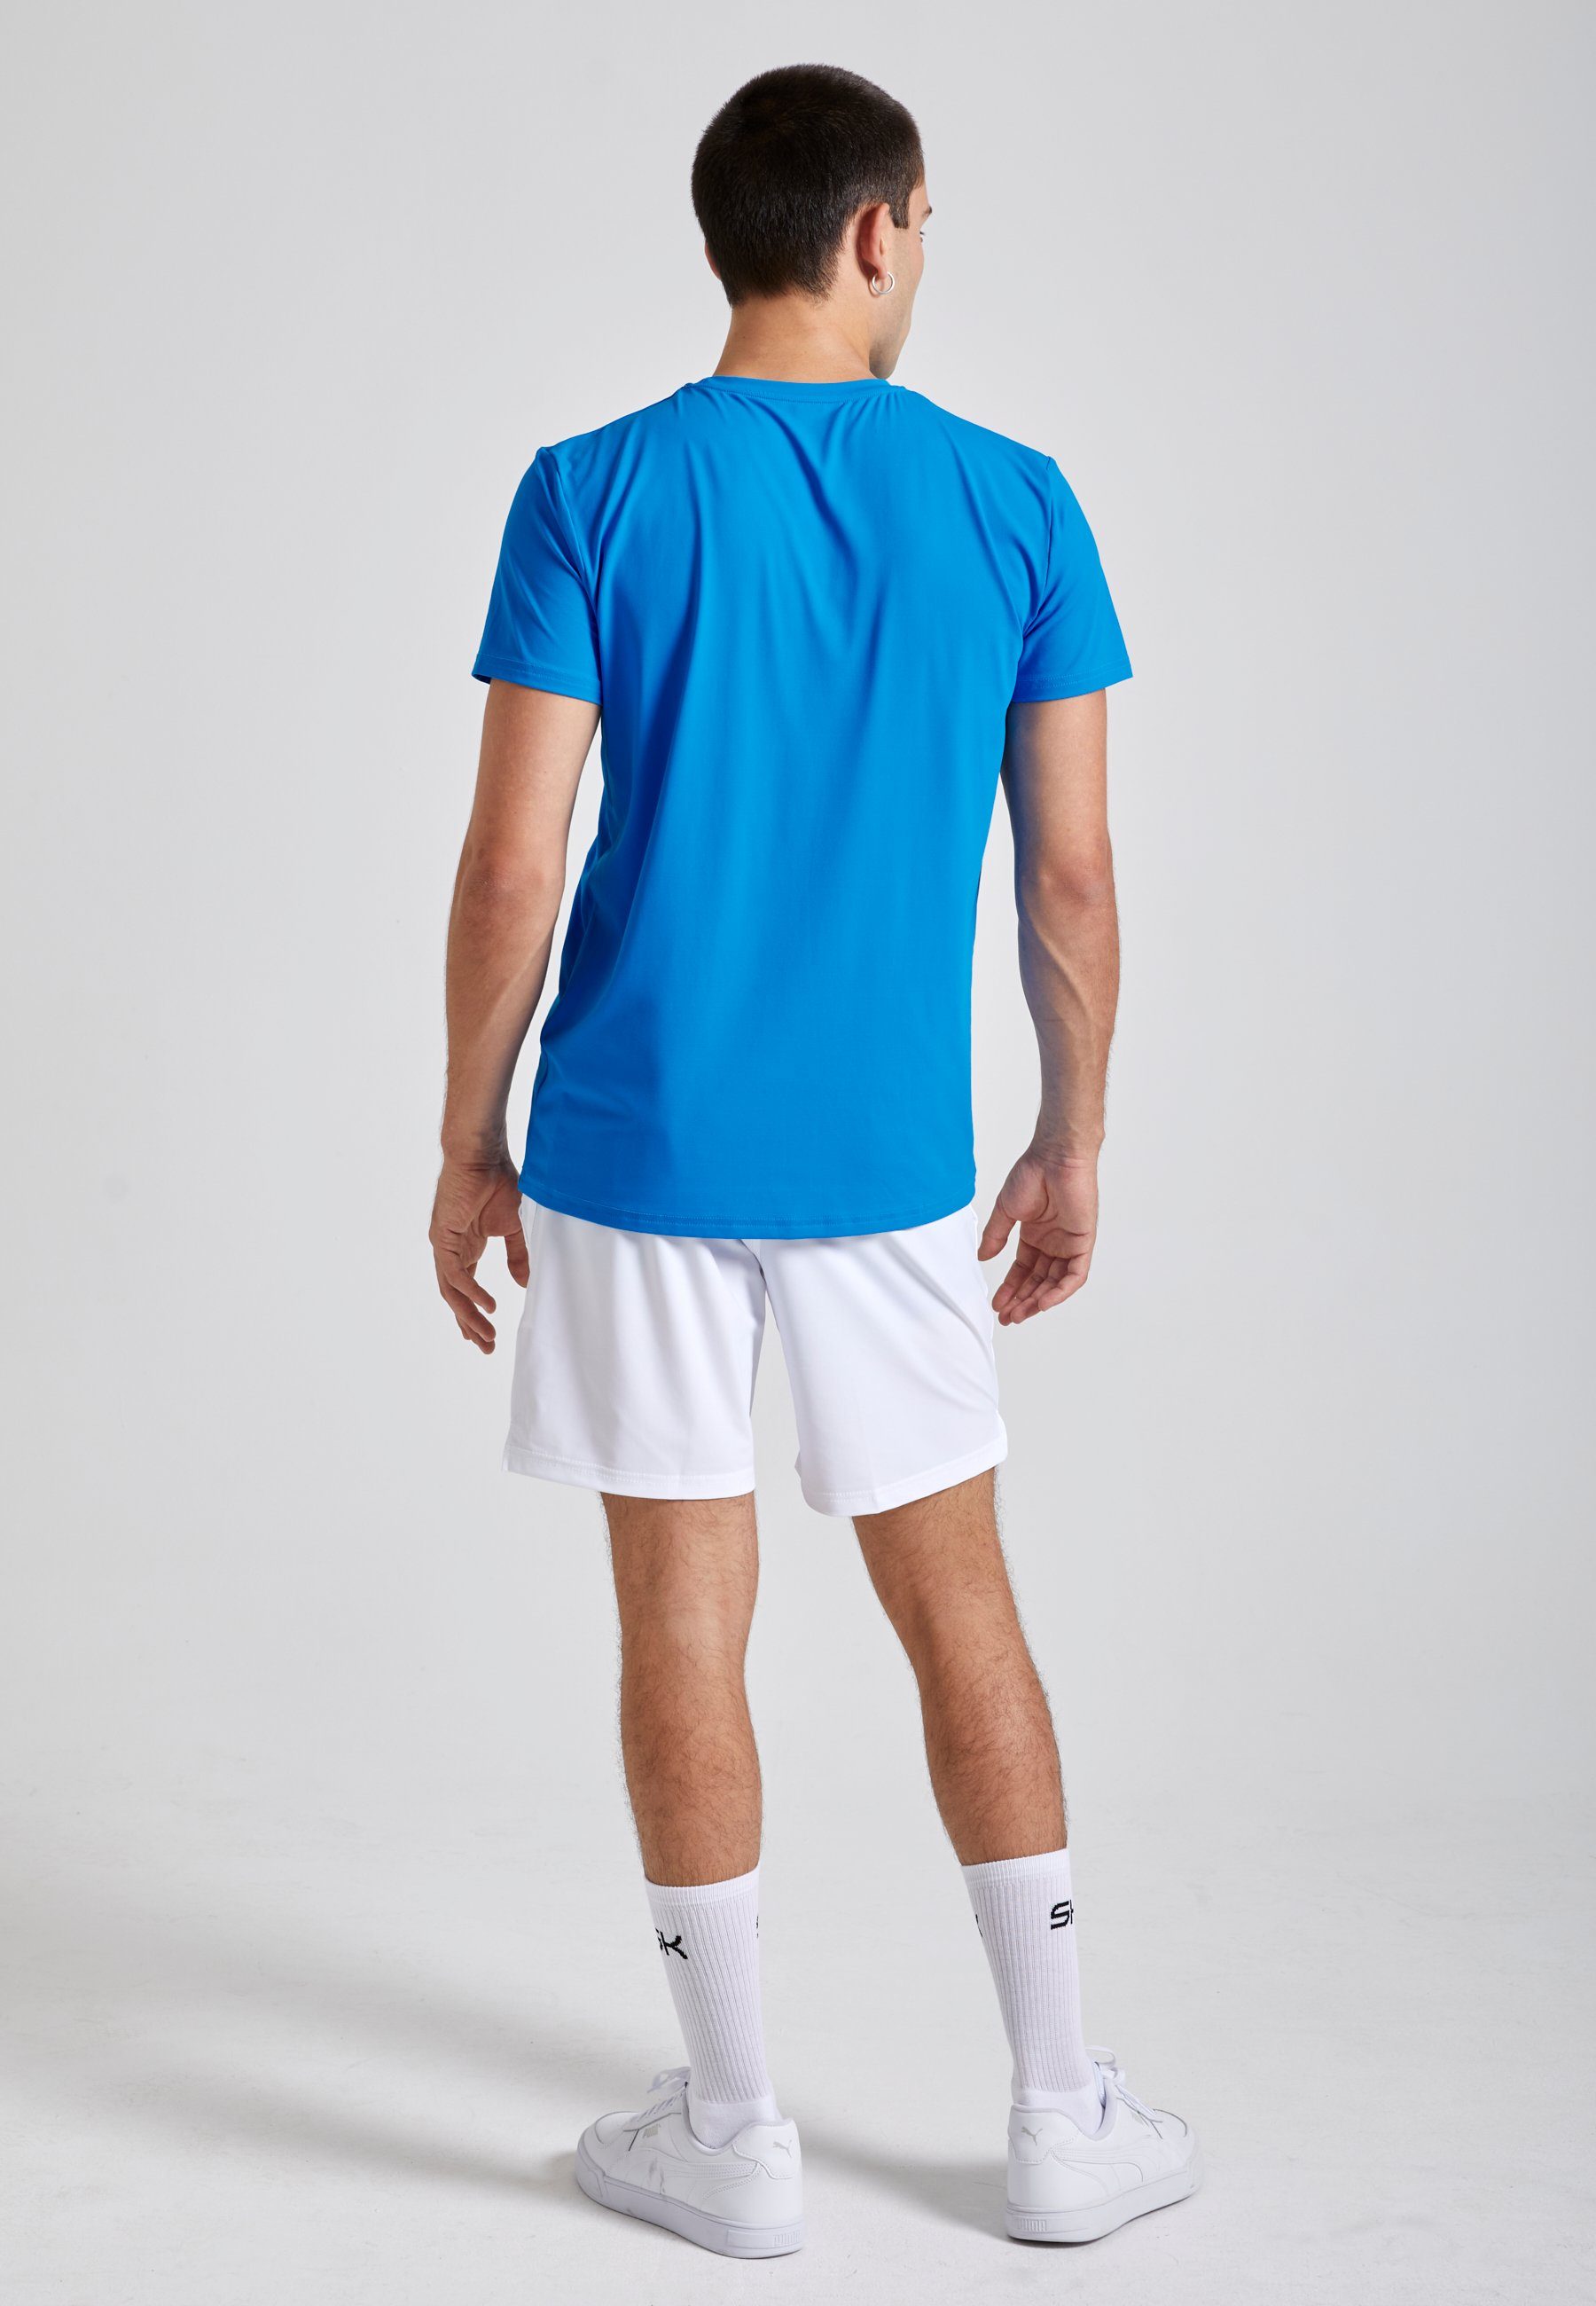 Tennis Herren SPORTKIND & cyan blau Funktionsshirt Rundhals T-Shirt Jungen